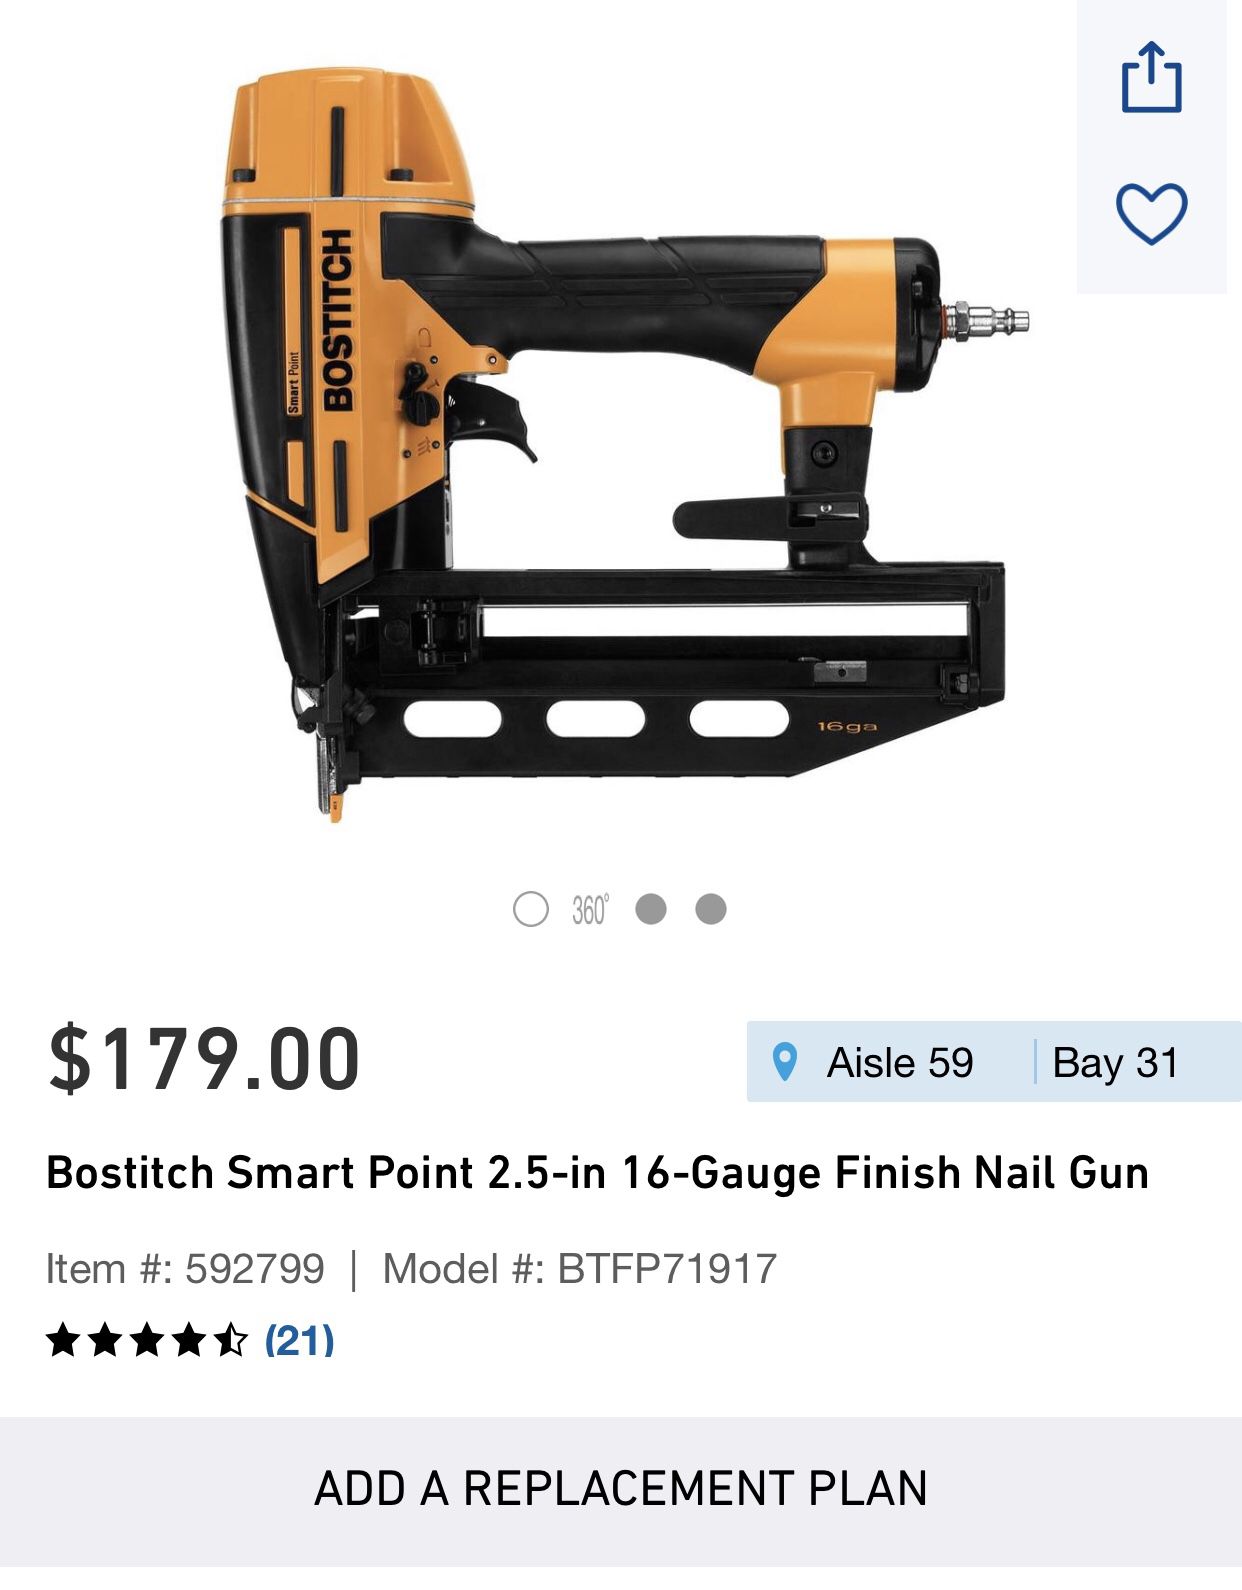 Bostitch Smart Point 2.5” 16 Gauge Finish Nail Gun